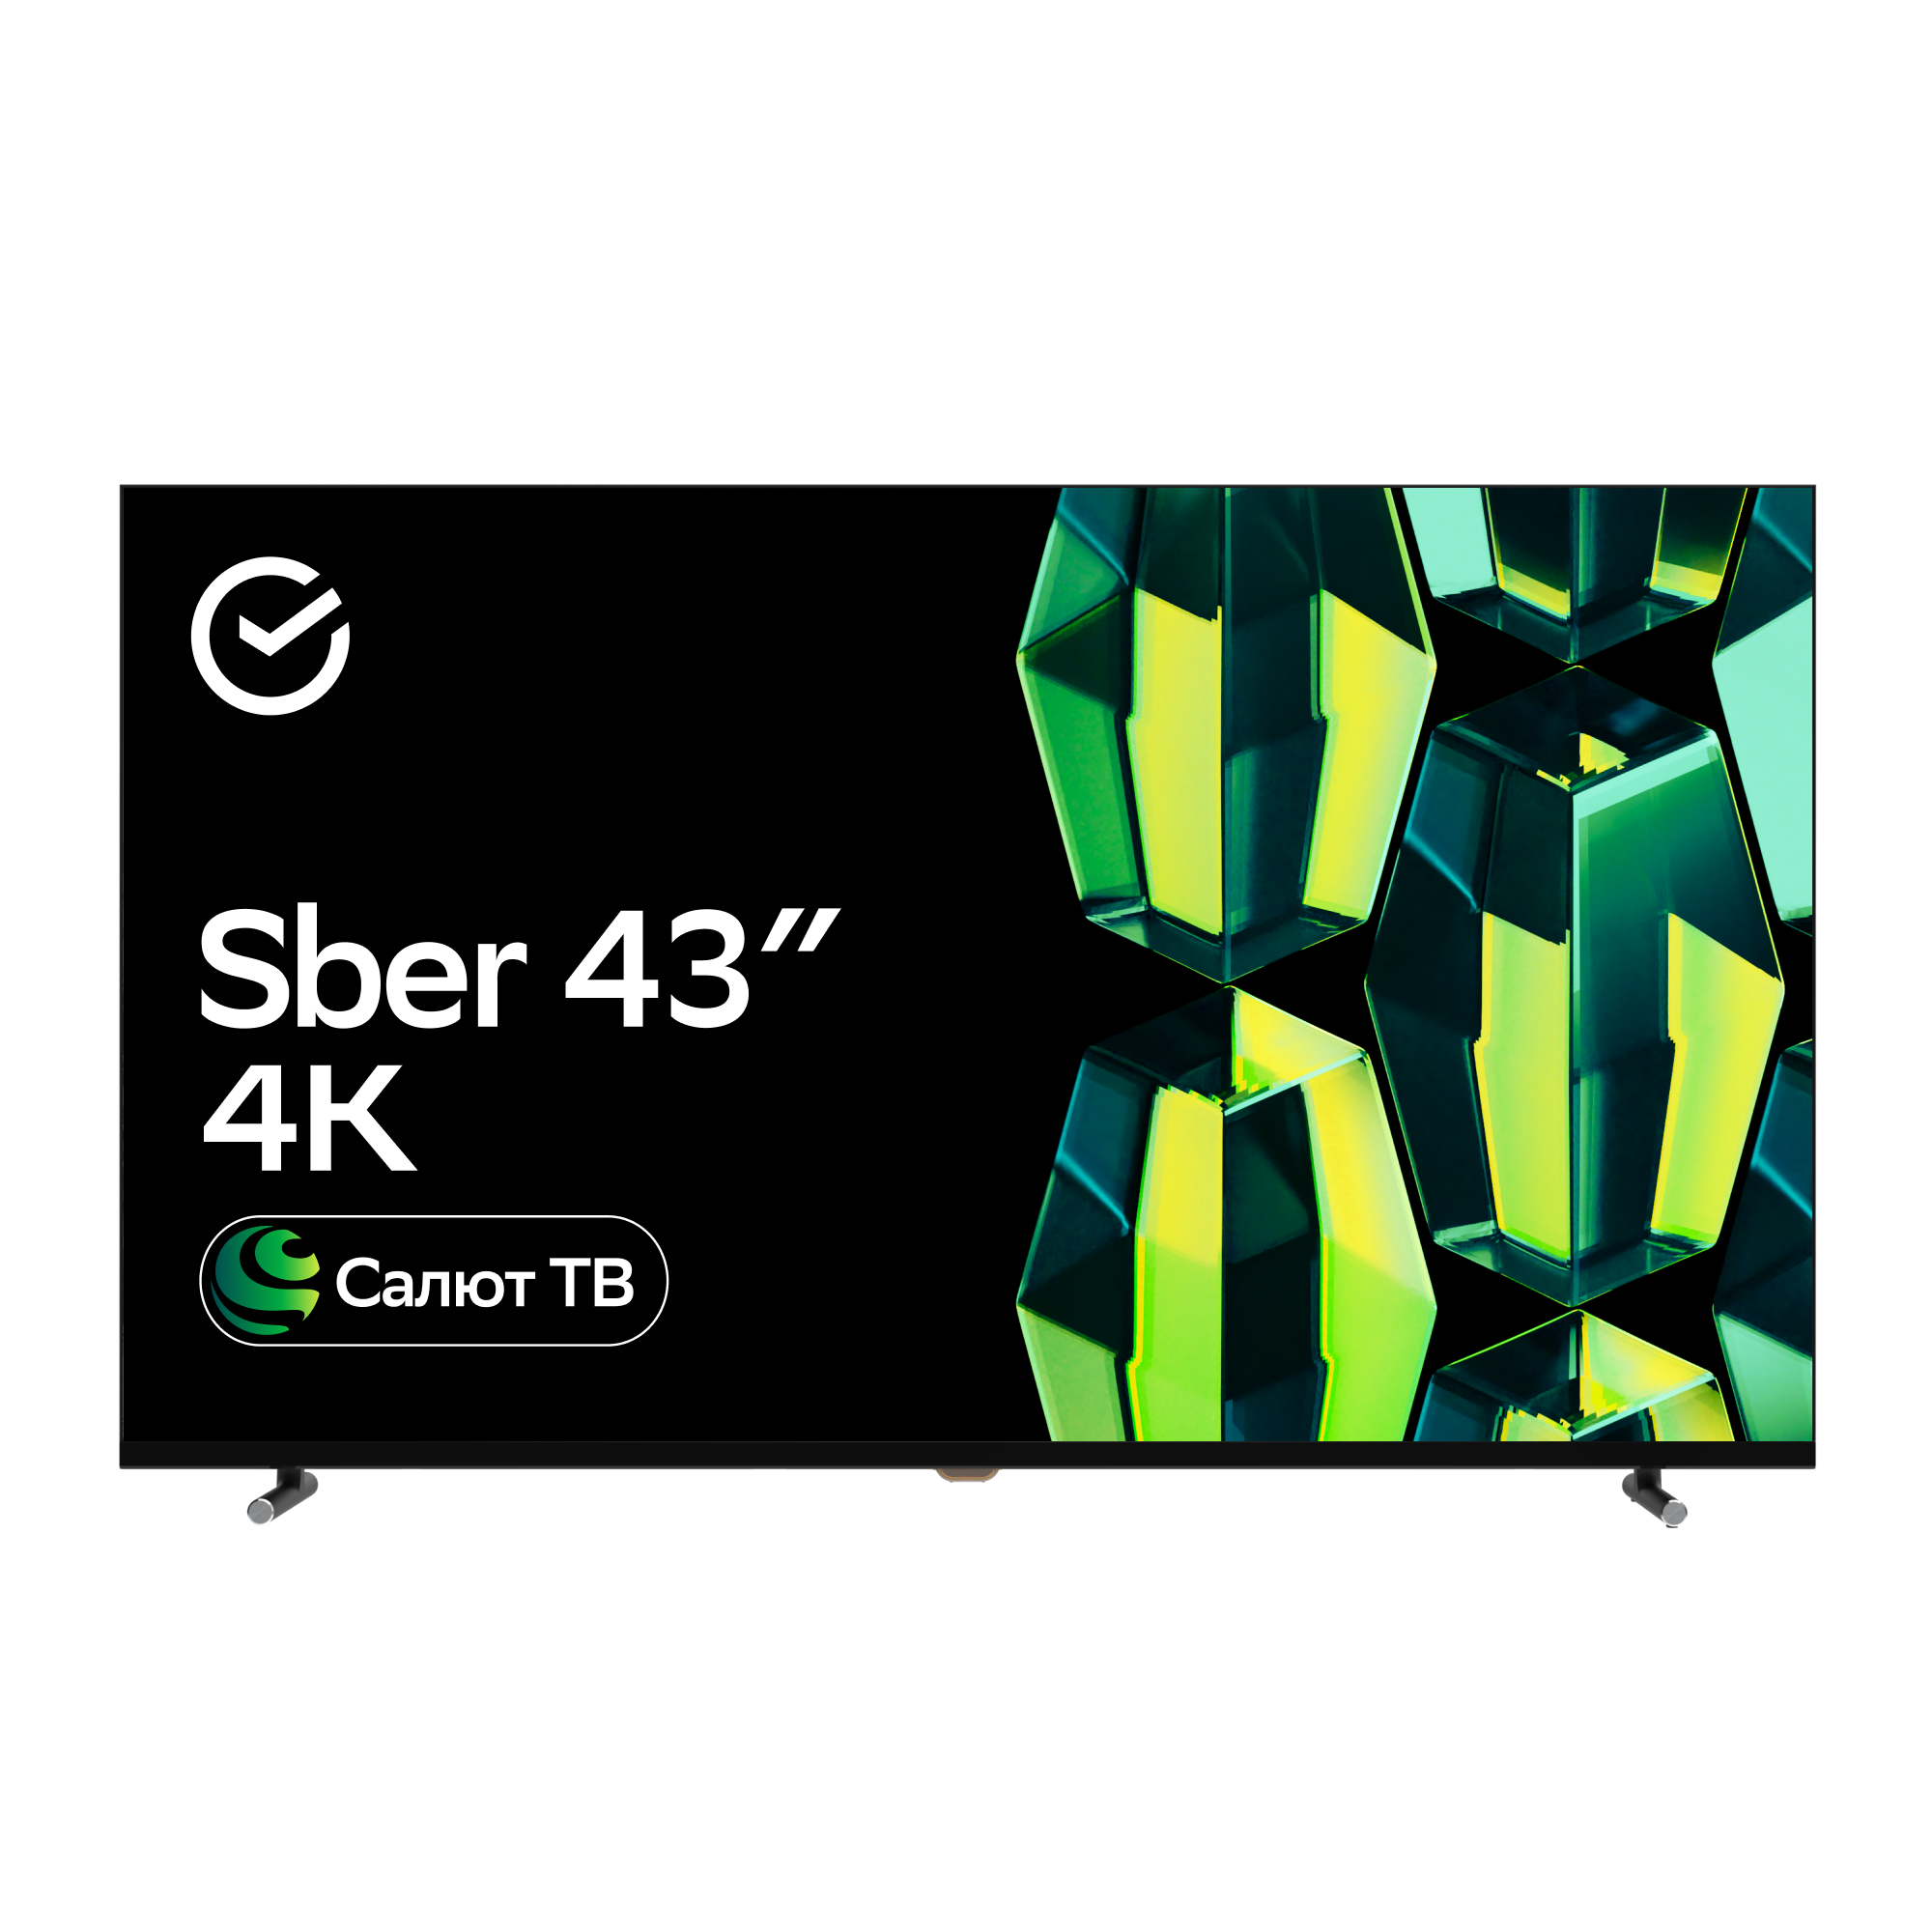 Телевизор Sber SDX-43U4124, 43"(109 см), UHD 4K RAM 2GB, купить в Москве, цены в интернет-магазинах на Мегамаркет